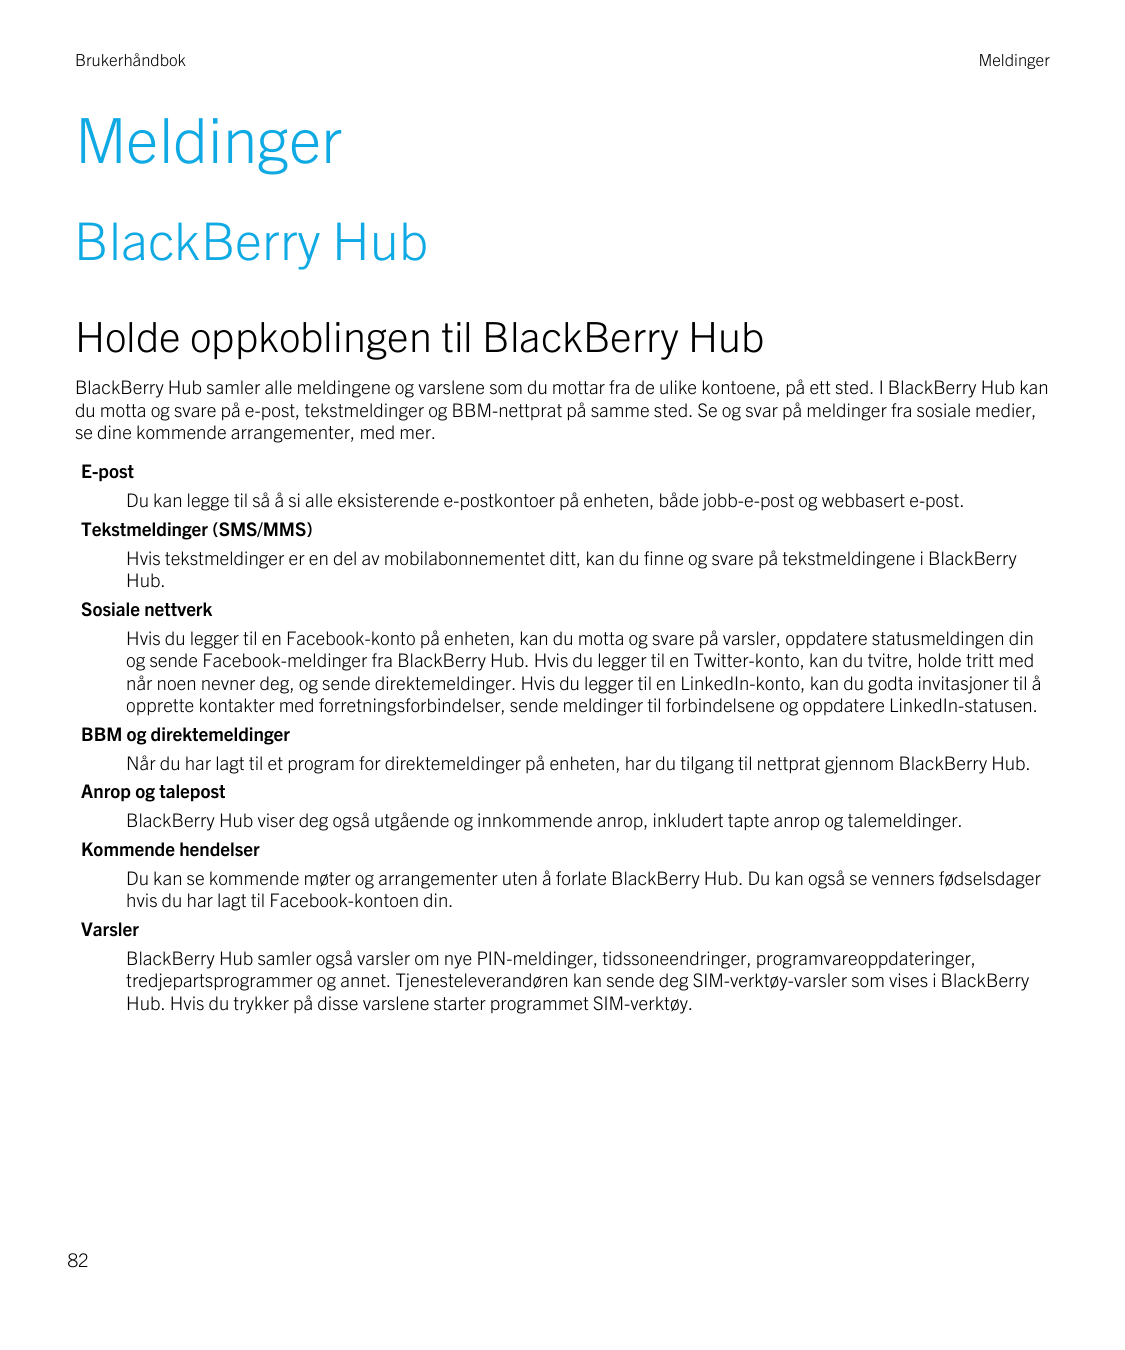 BrukerhåndbokMeldingerMeldingerBlackBerry HubHolde oppkoblingen til BlackBerry HubBlackBerry Hub samler alle meldingene og varsl